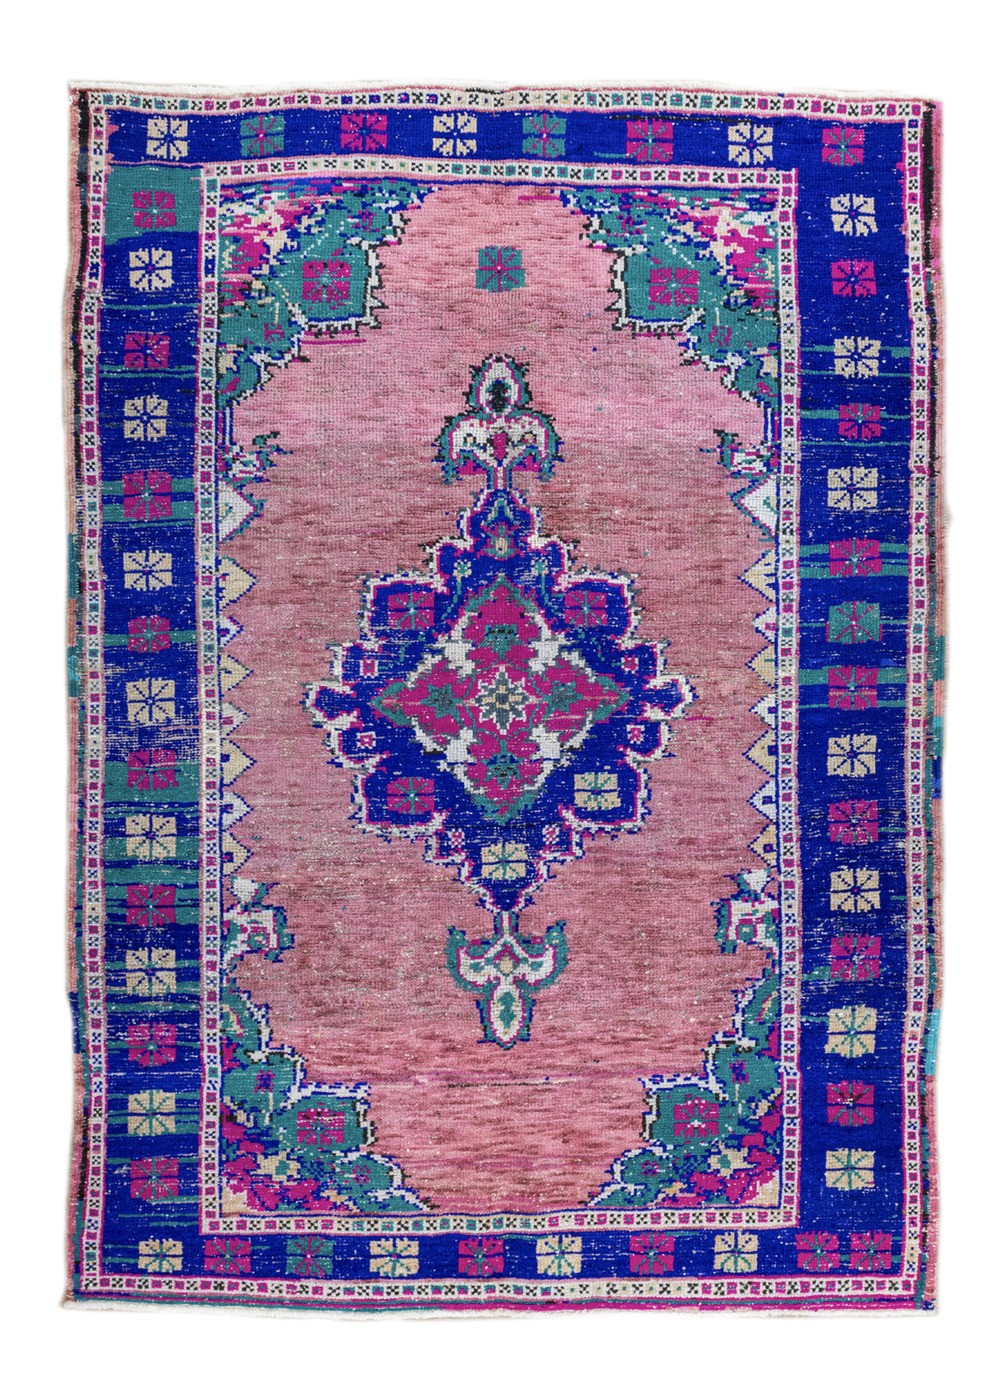 Saya Colorful Hand-Woven Anatolian Rug 132x180 cm